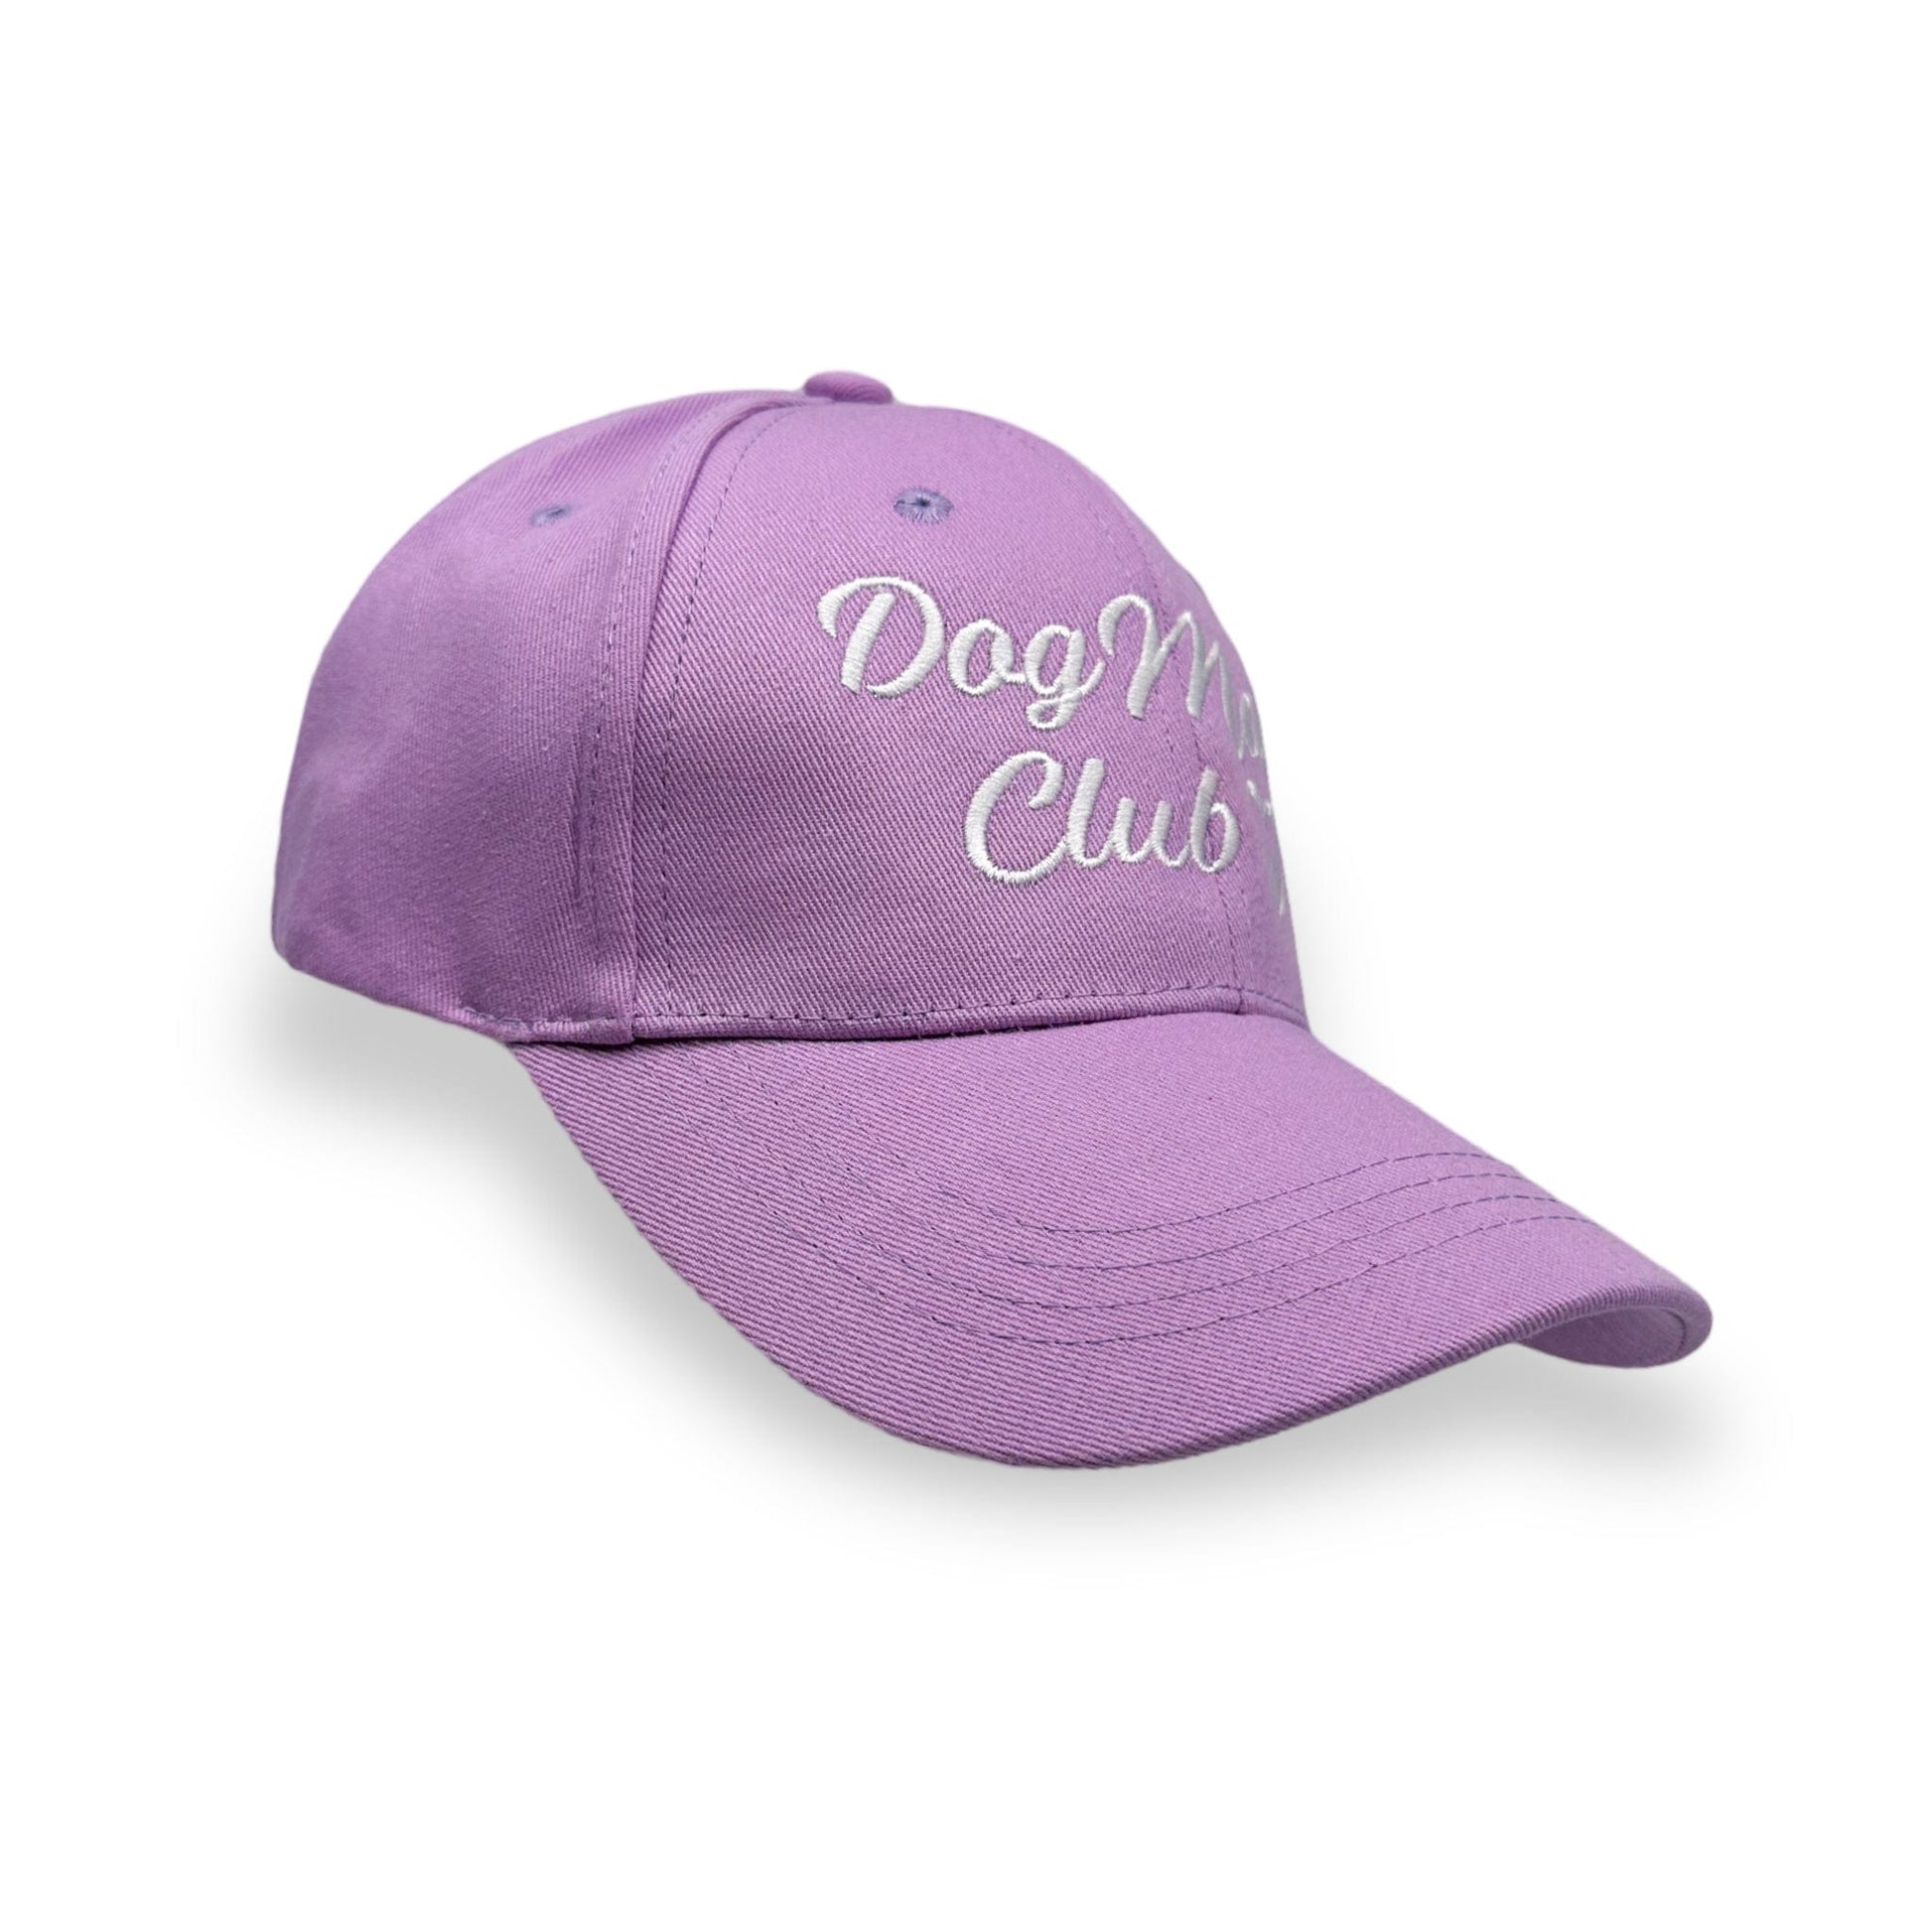 Zelda & Harley Apparel & Accessories Dog Mom Club Hat - Lilac